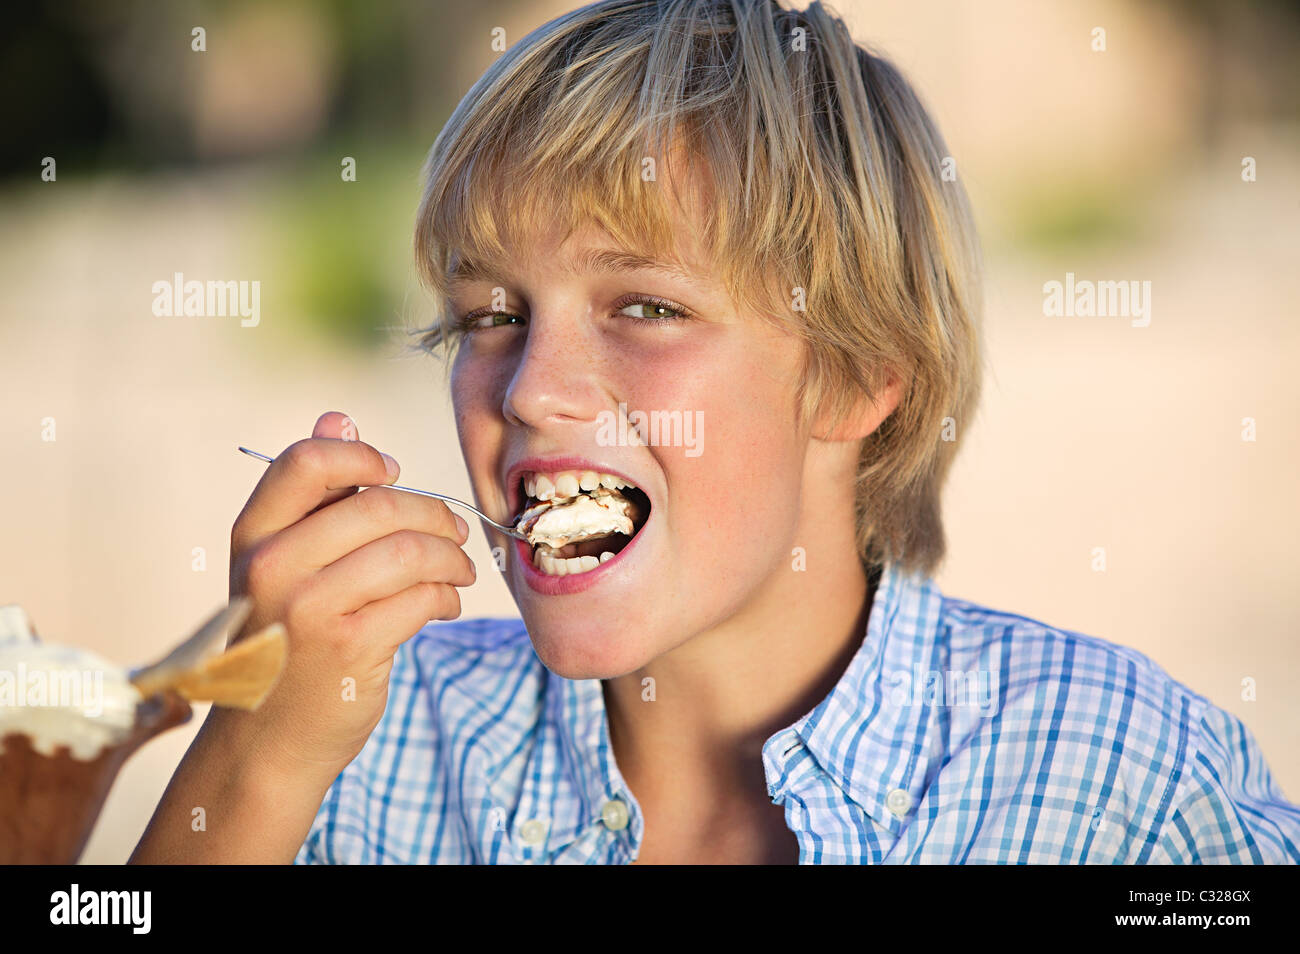 Boy eating ice cream Stock Photo